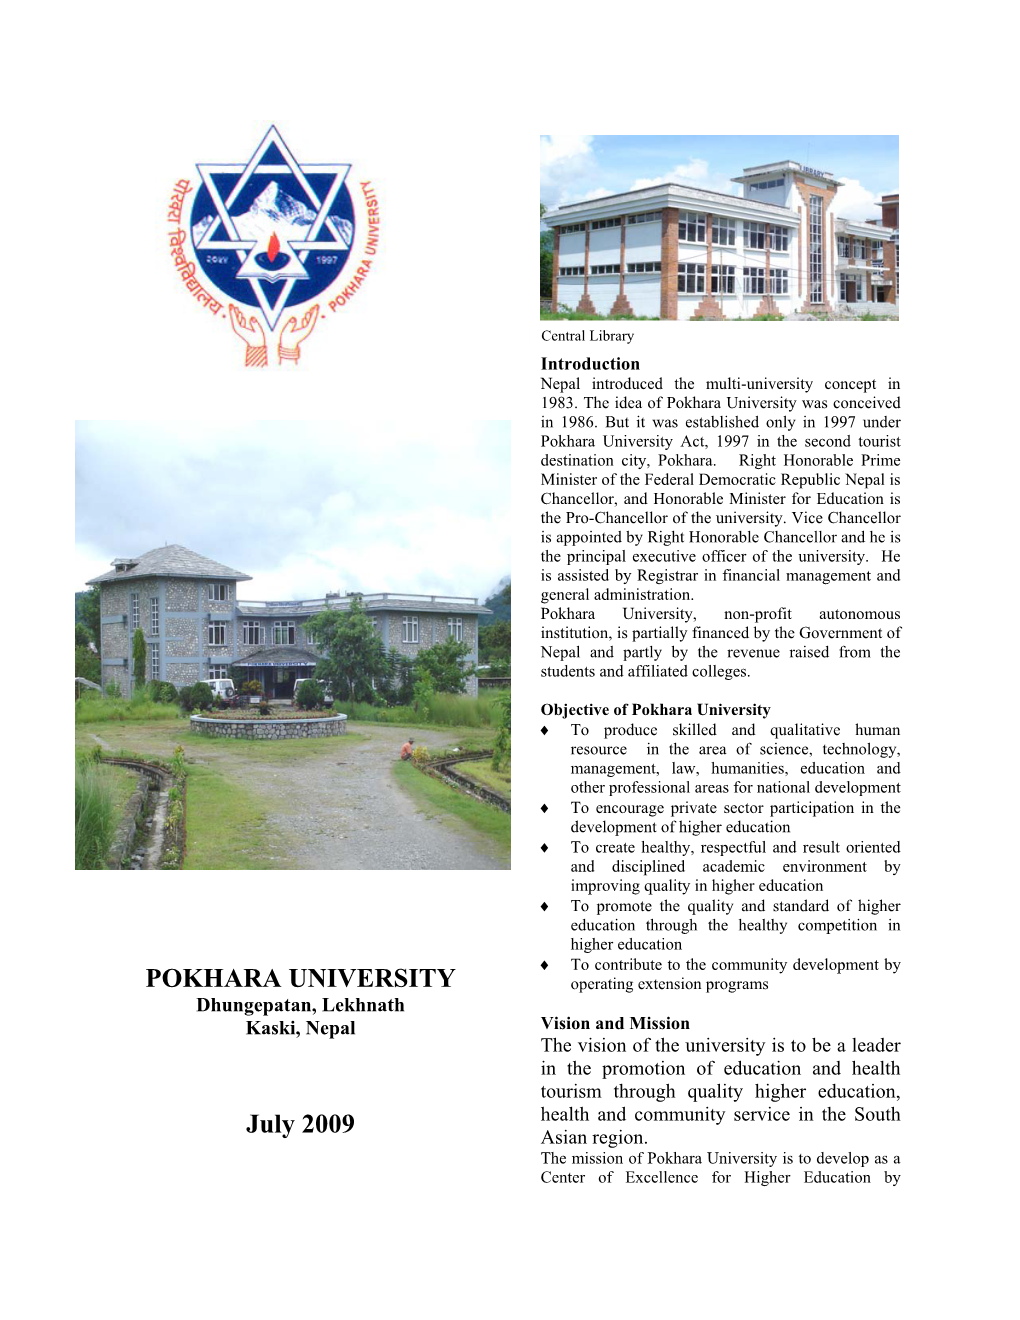 Structure of Leaflet of Pokhara University